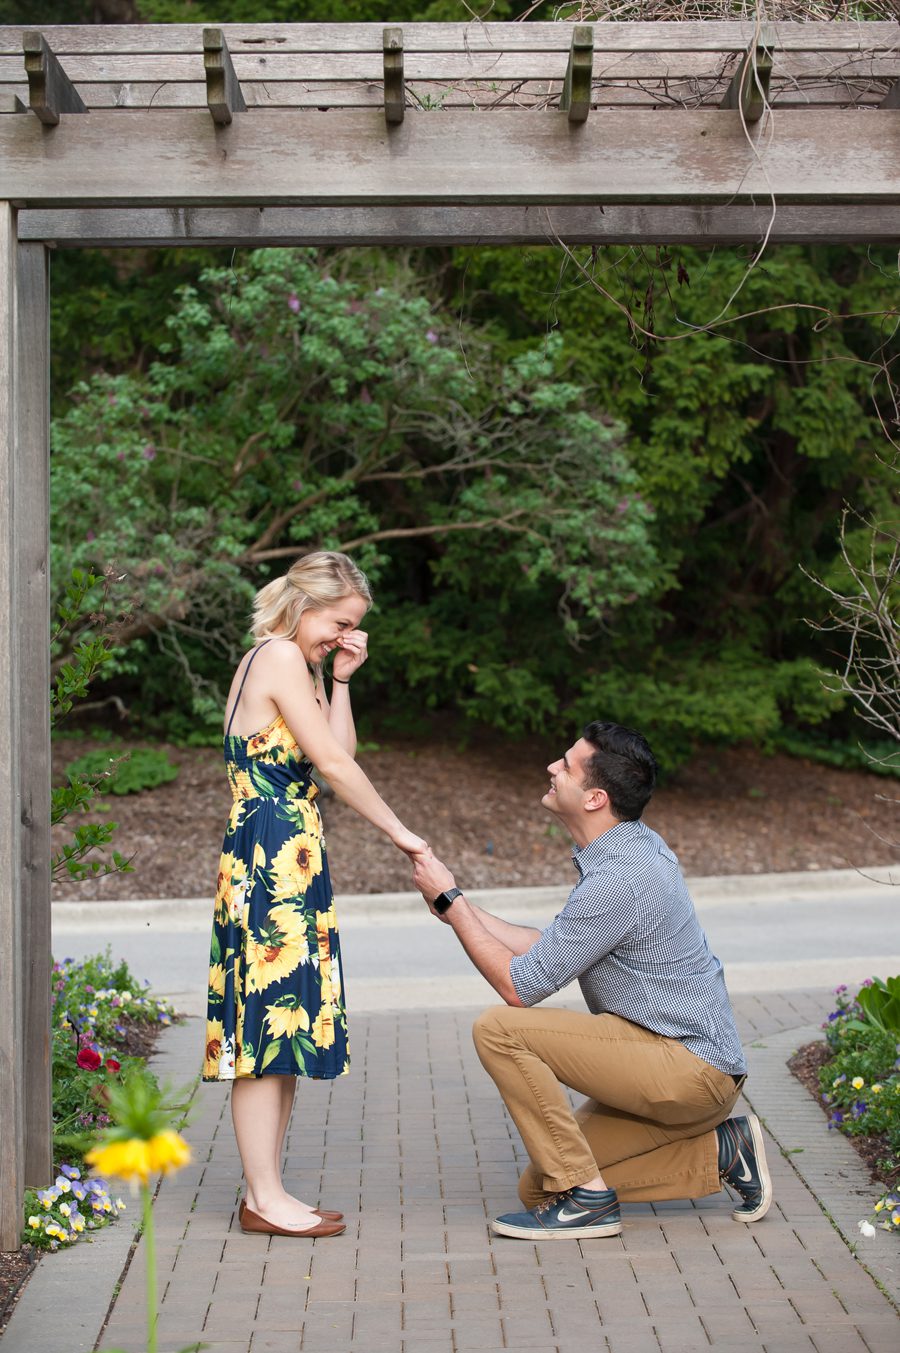 surprise proposal photography – Elite Photo engagement photograp